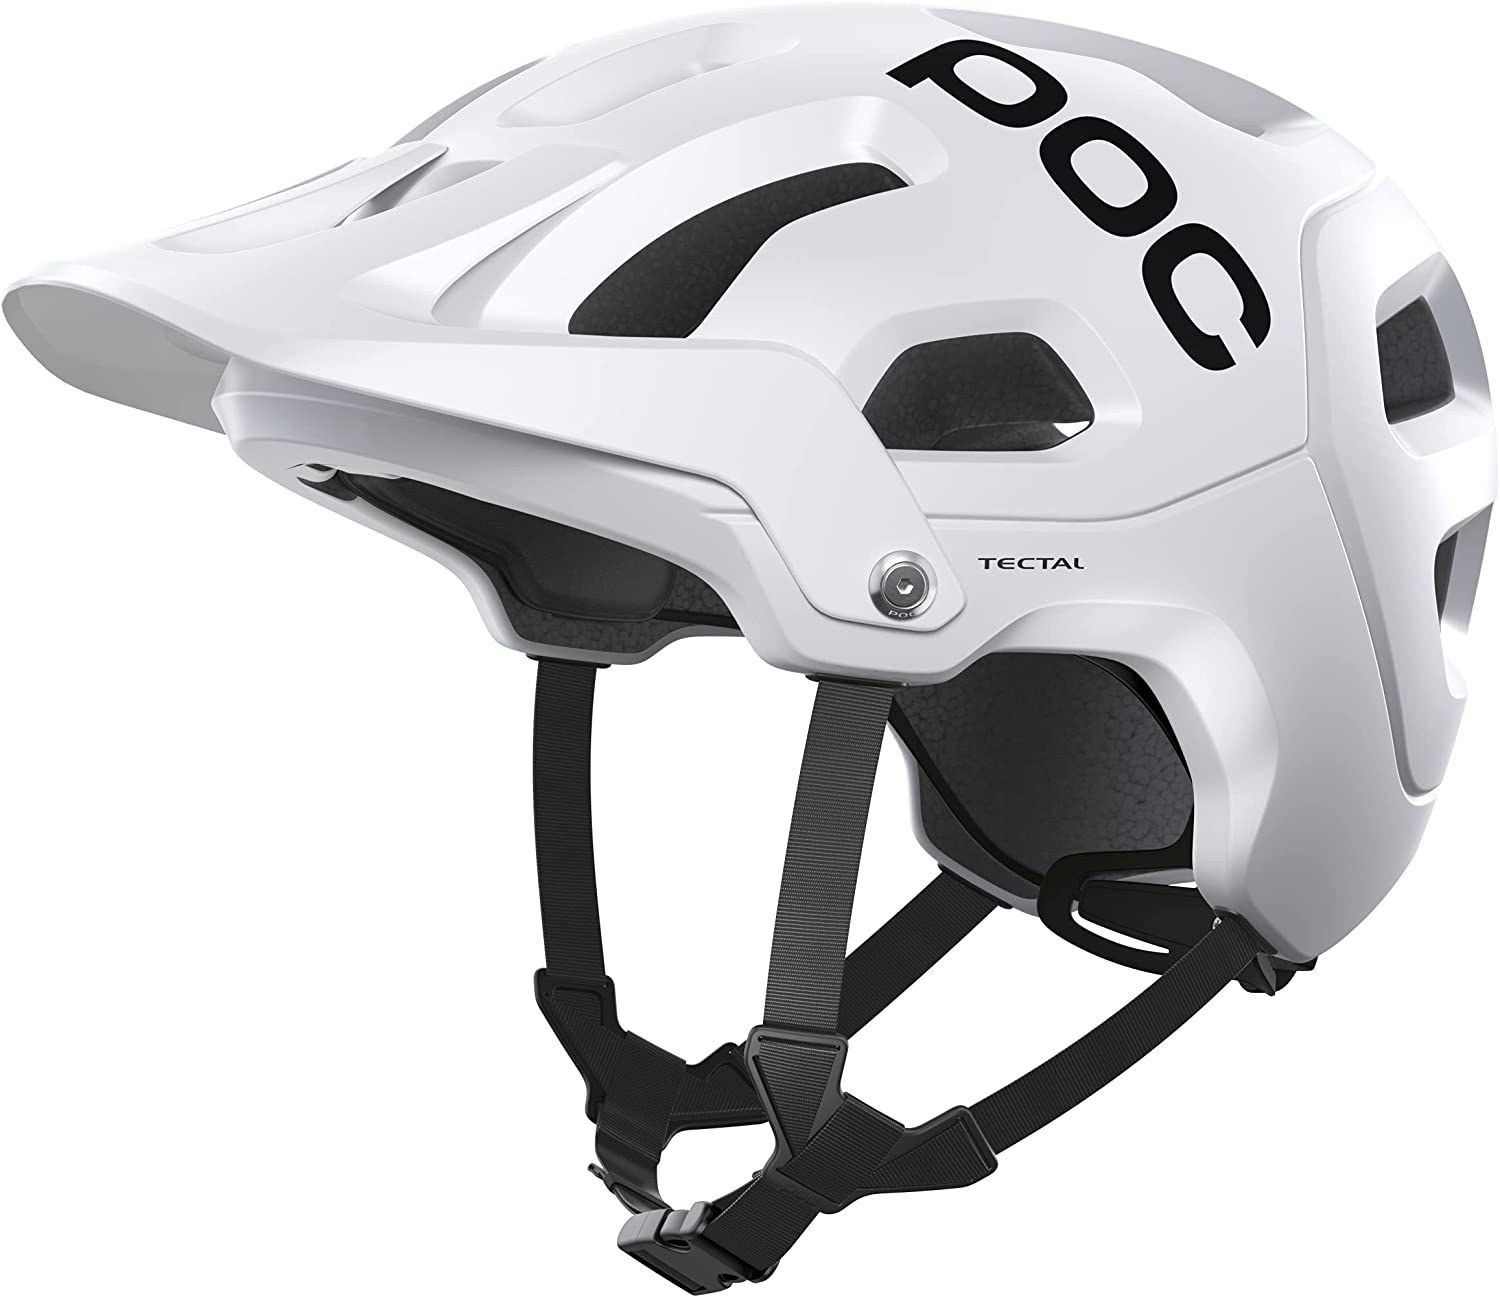 POC helmet for mountain biking